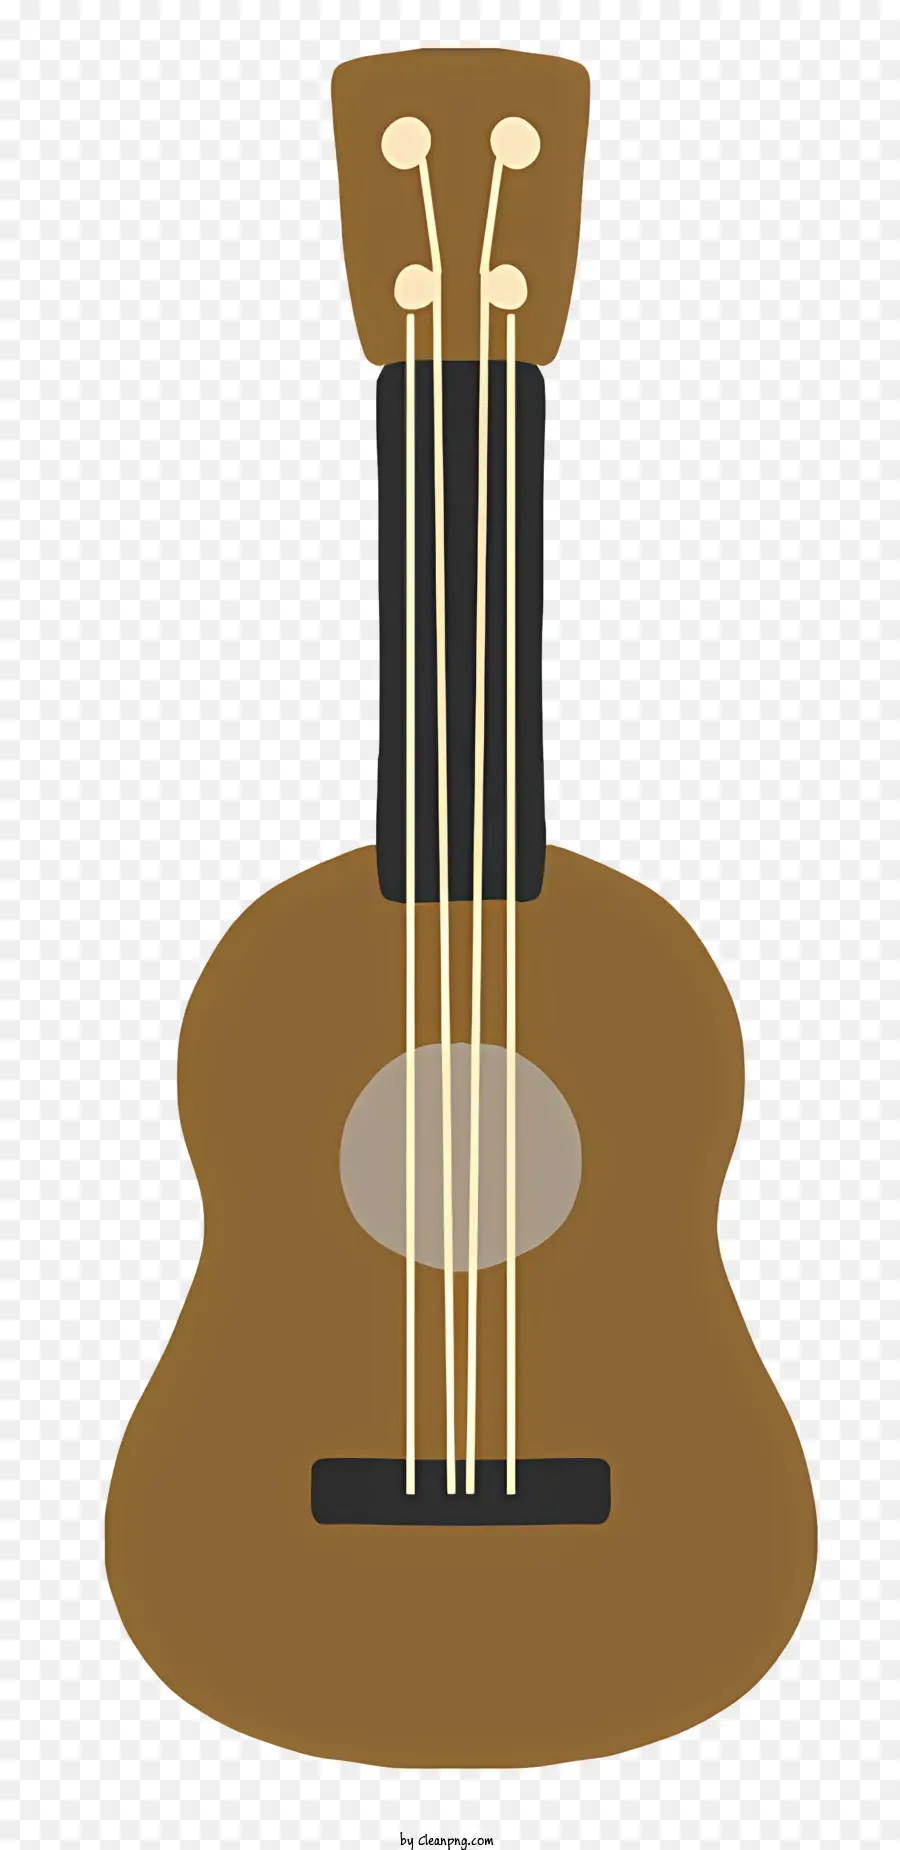 chitarra - Immagine chiara e definita della chitarra marrone con accenti neri